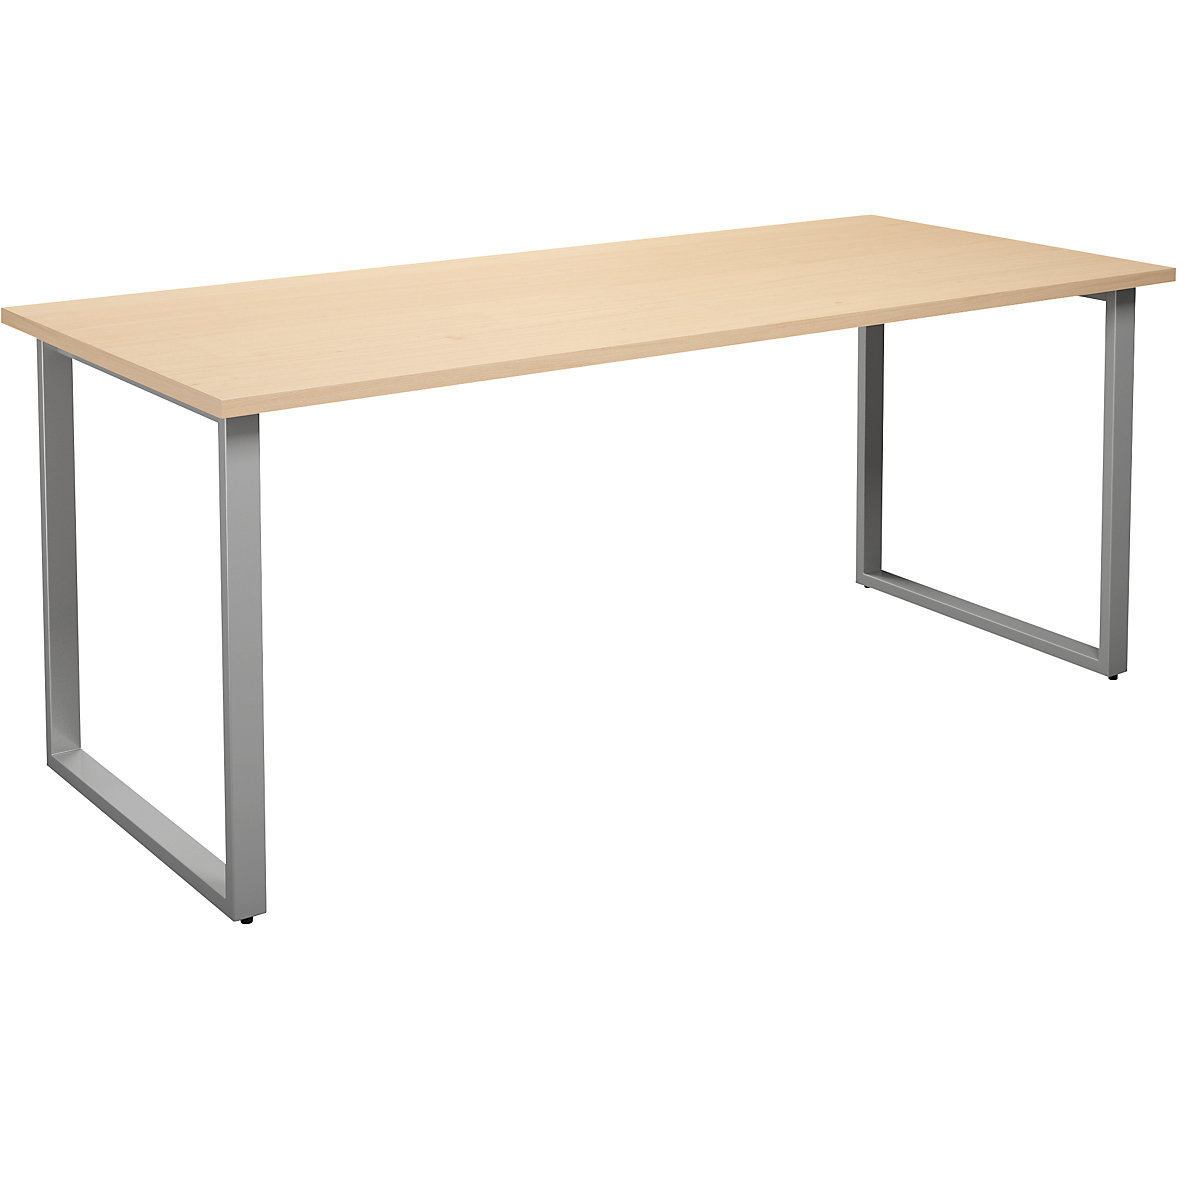 DUO-O multi-purpose desk, straight tabletop, WxD 1800 x 800 mm, birch, silver-11